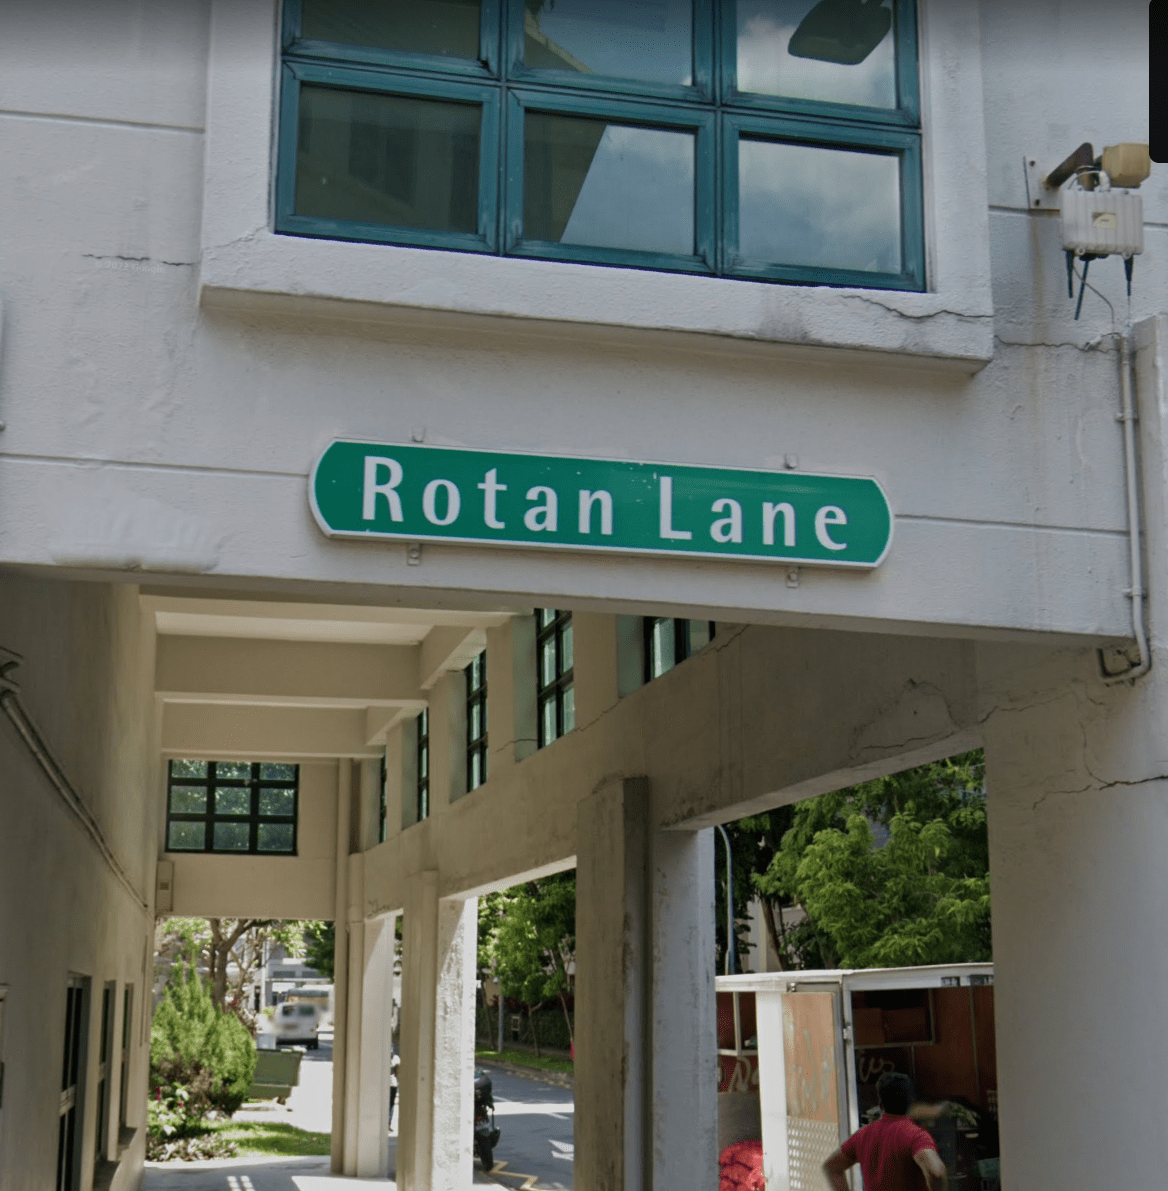  rotan lane